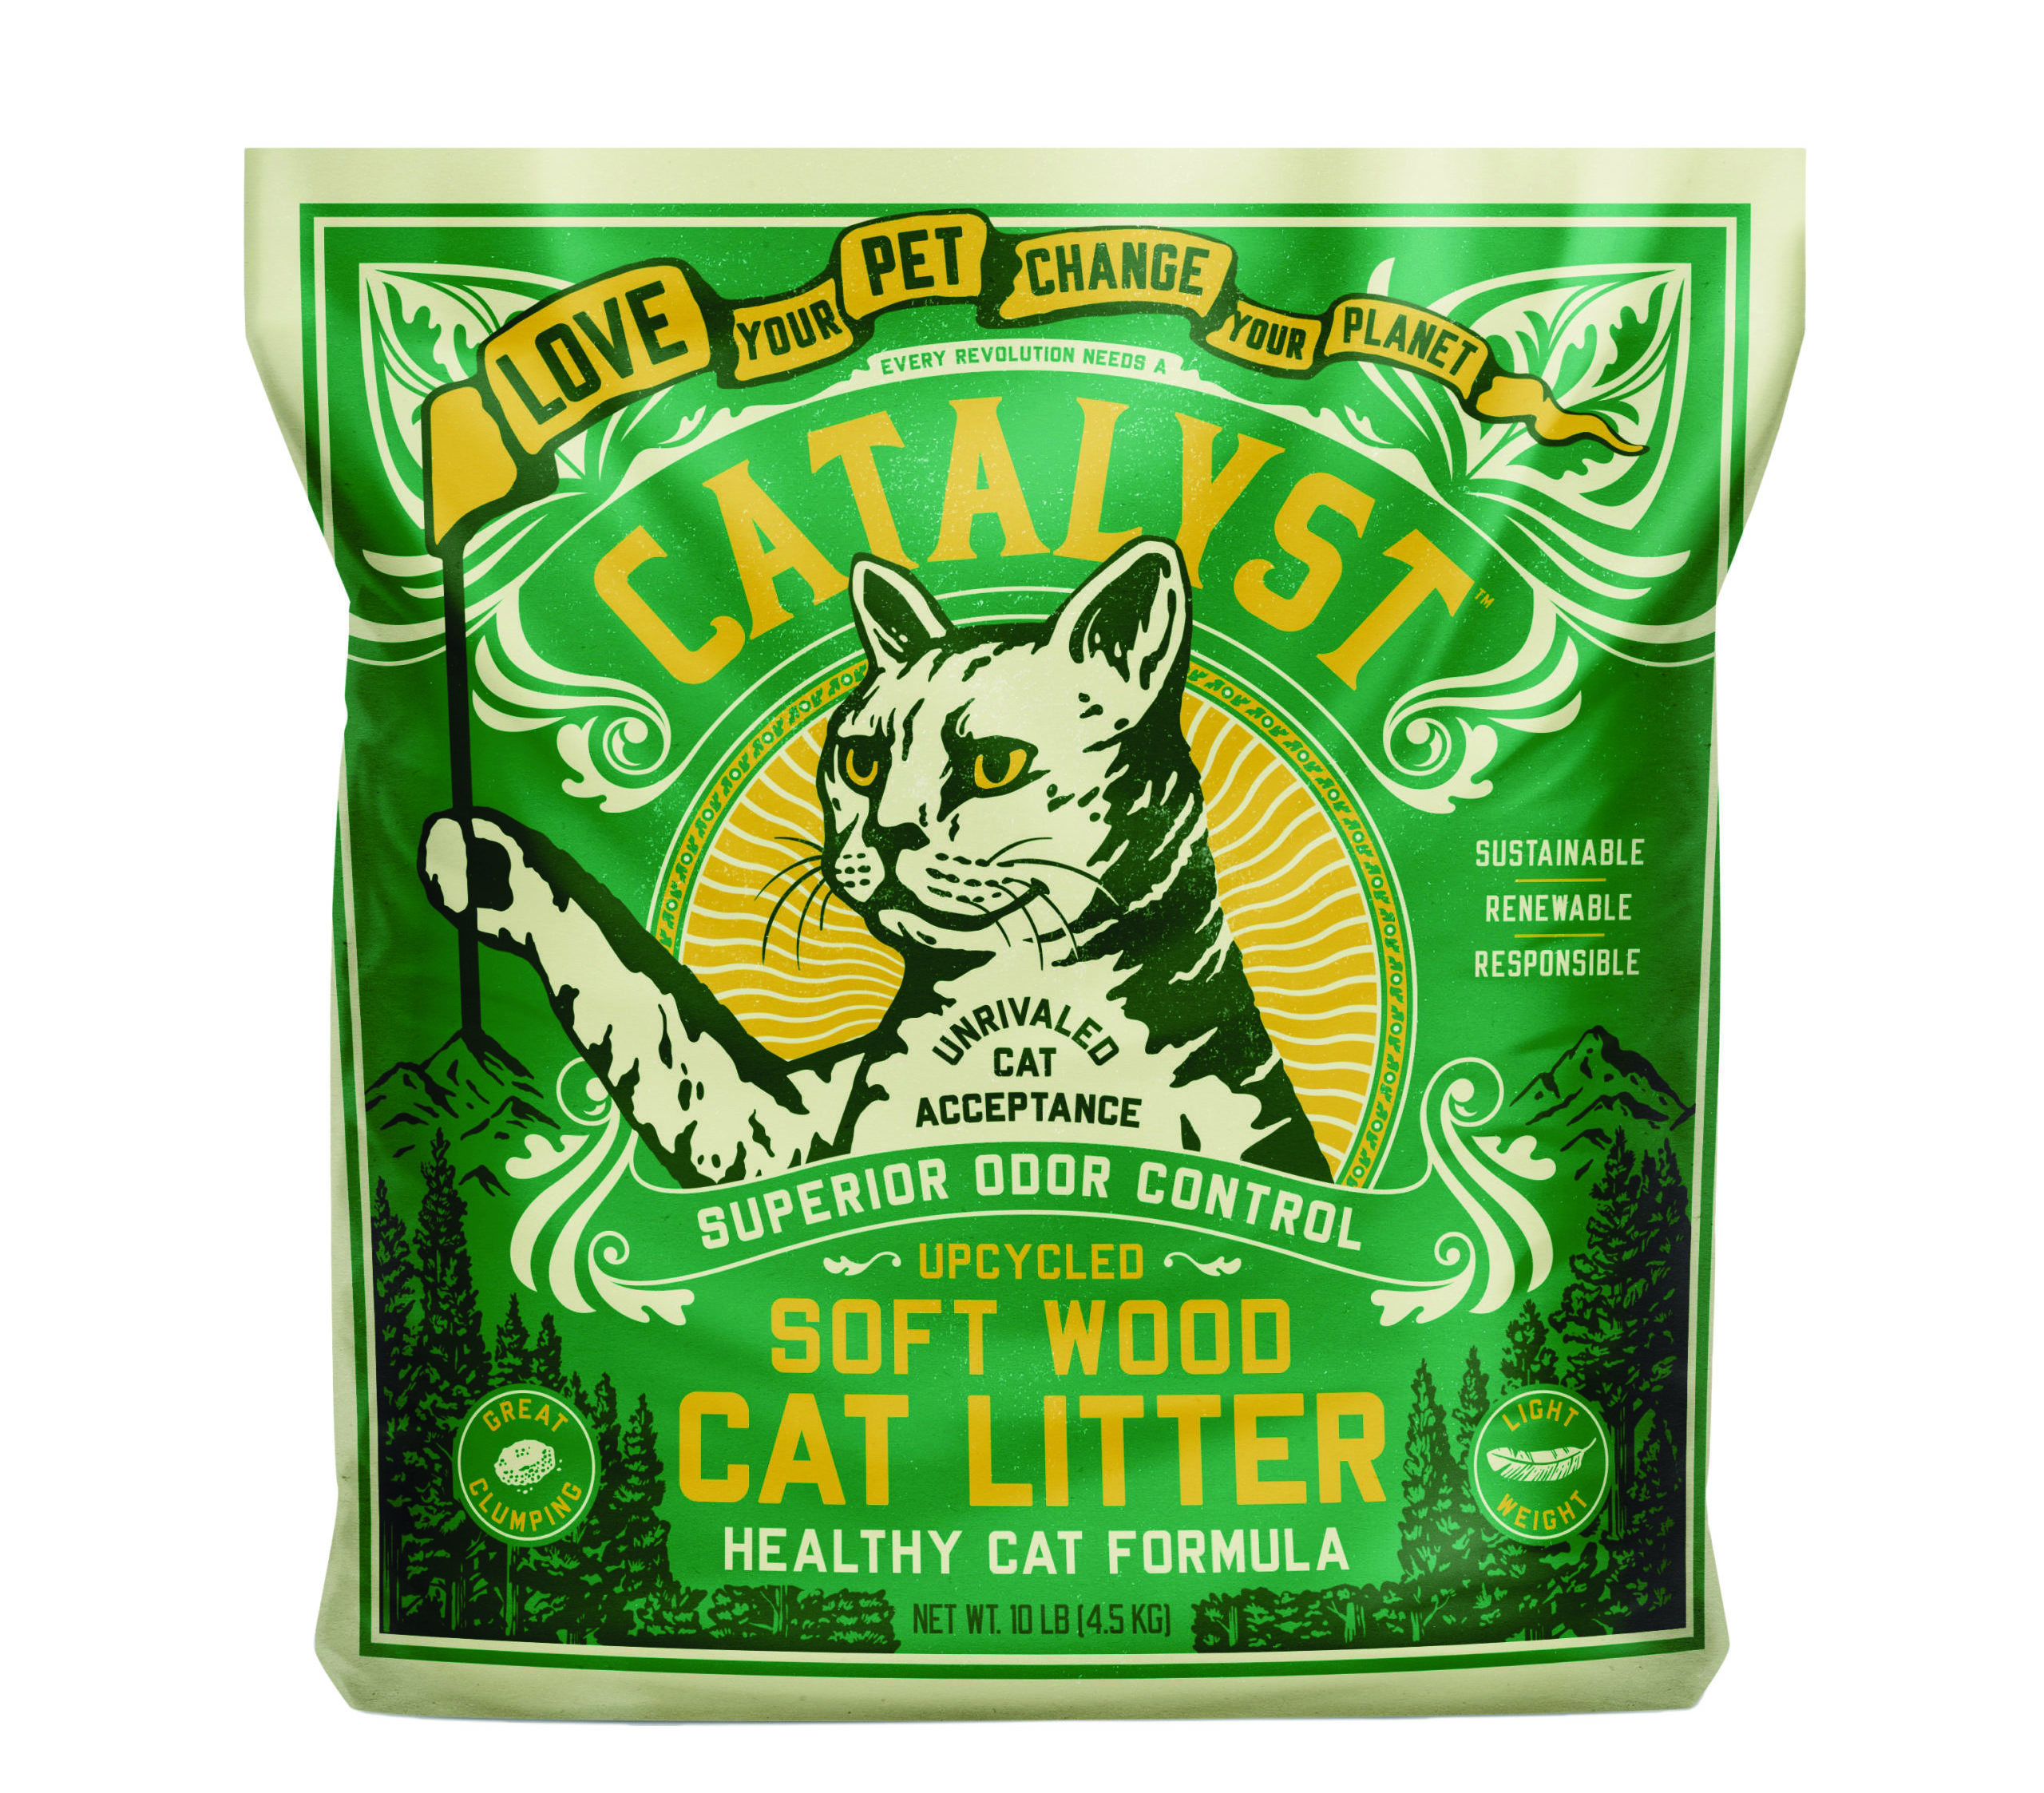 Catalyst Pet Soft Wood cat litter